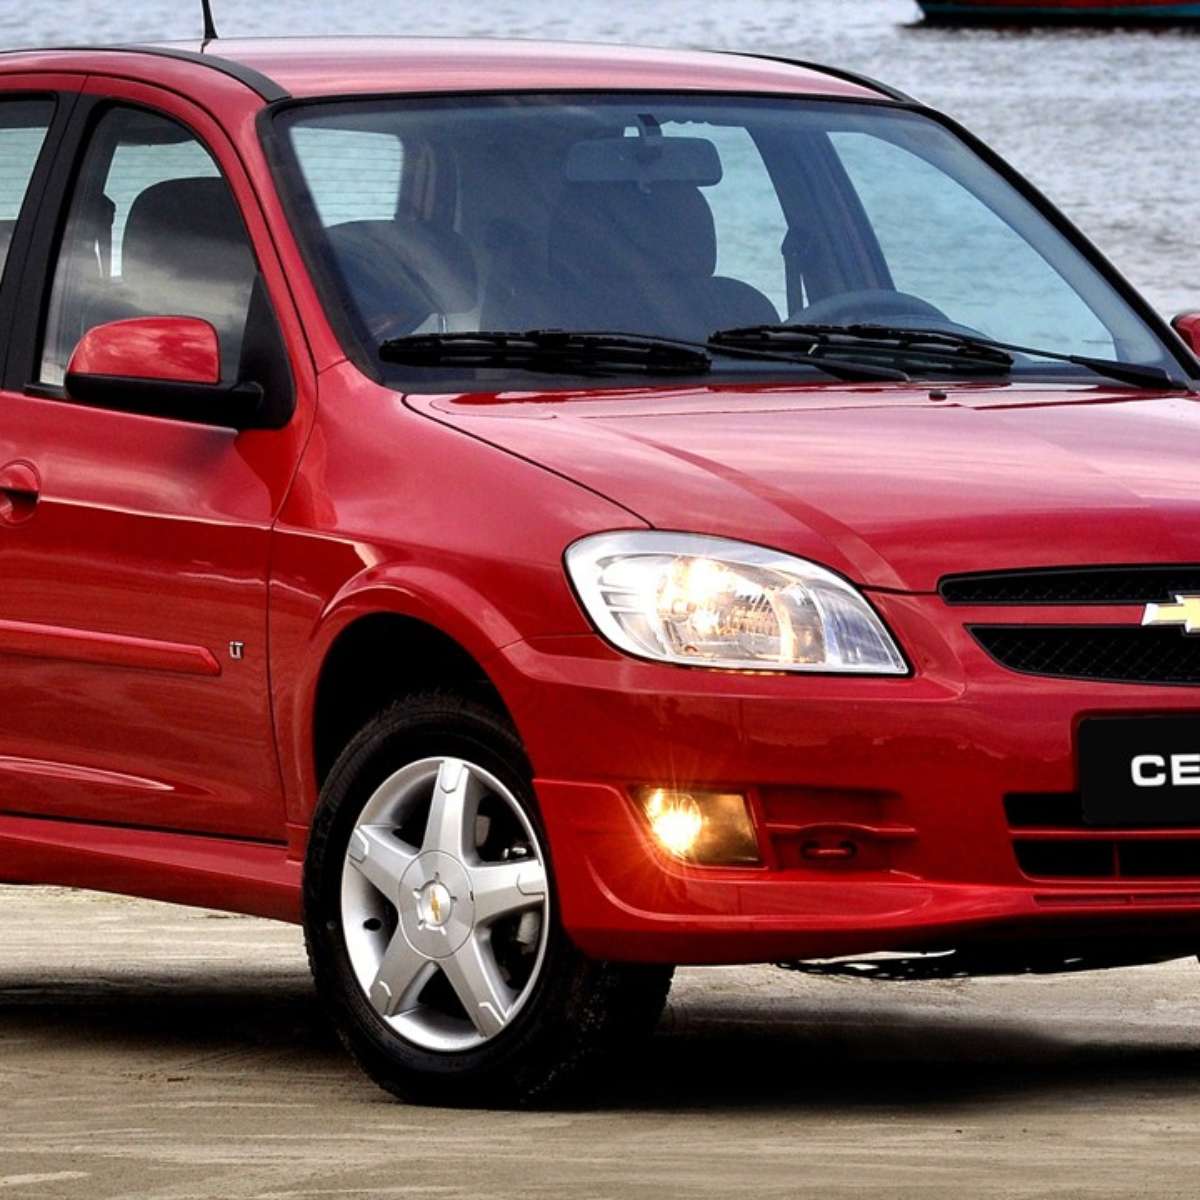 Chevrolet Corsa Sedan 2009, uma boa opção para famílias! Confiável